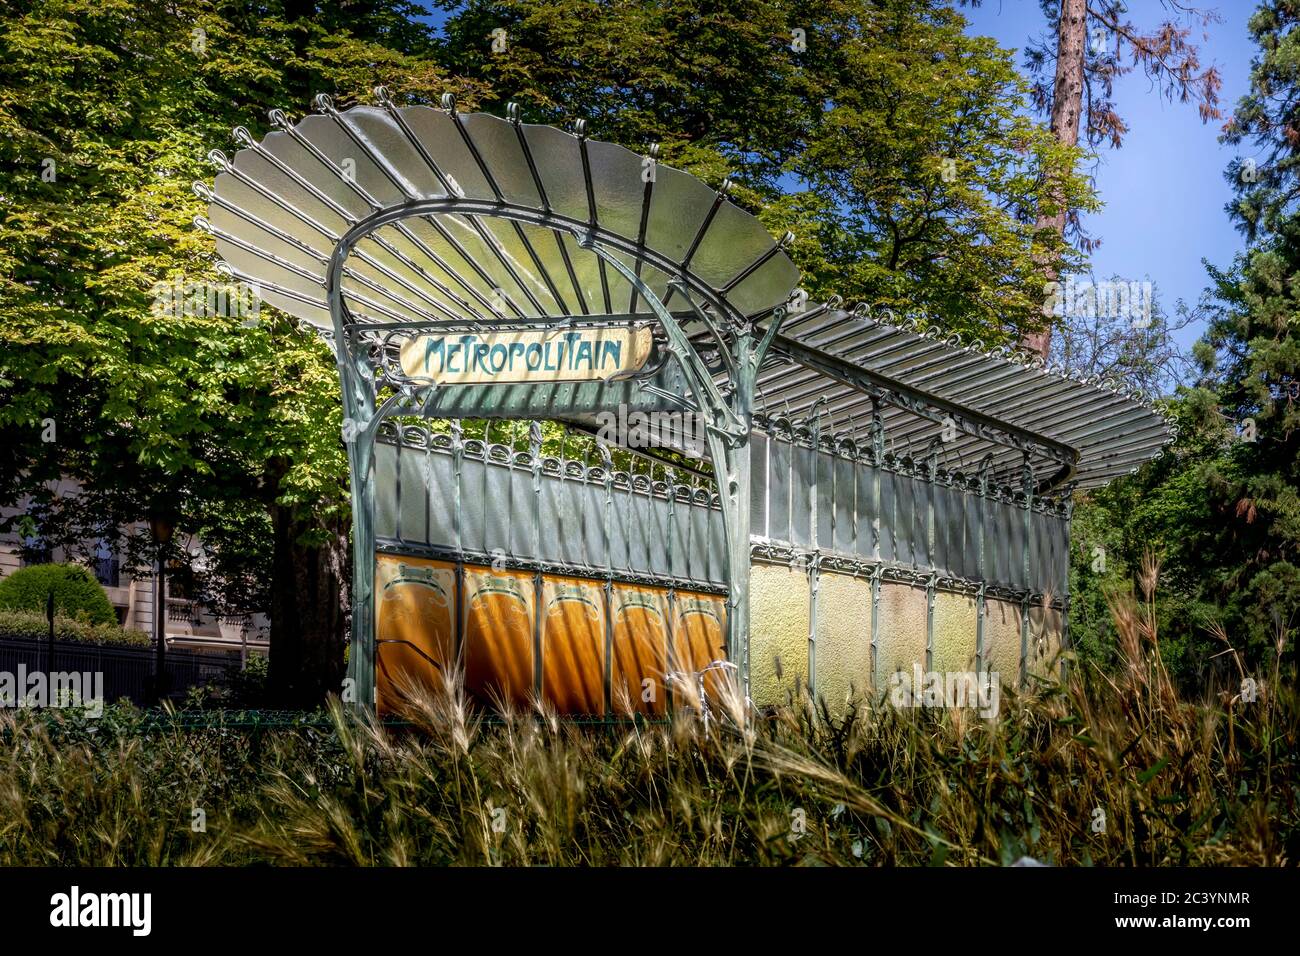 Parigi, Francia - 22 giugno 2020: Ingresso della metropolitana costruito un secolo fa dall'architetto art nouveau Hector Guimard. E' una famosa stazione della metropolitana a Parigi, porto Foto Stock